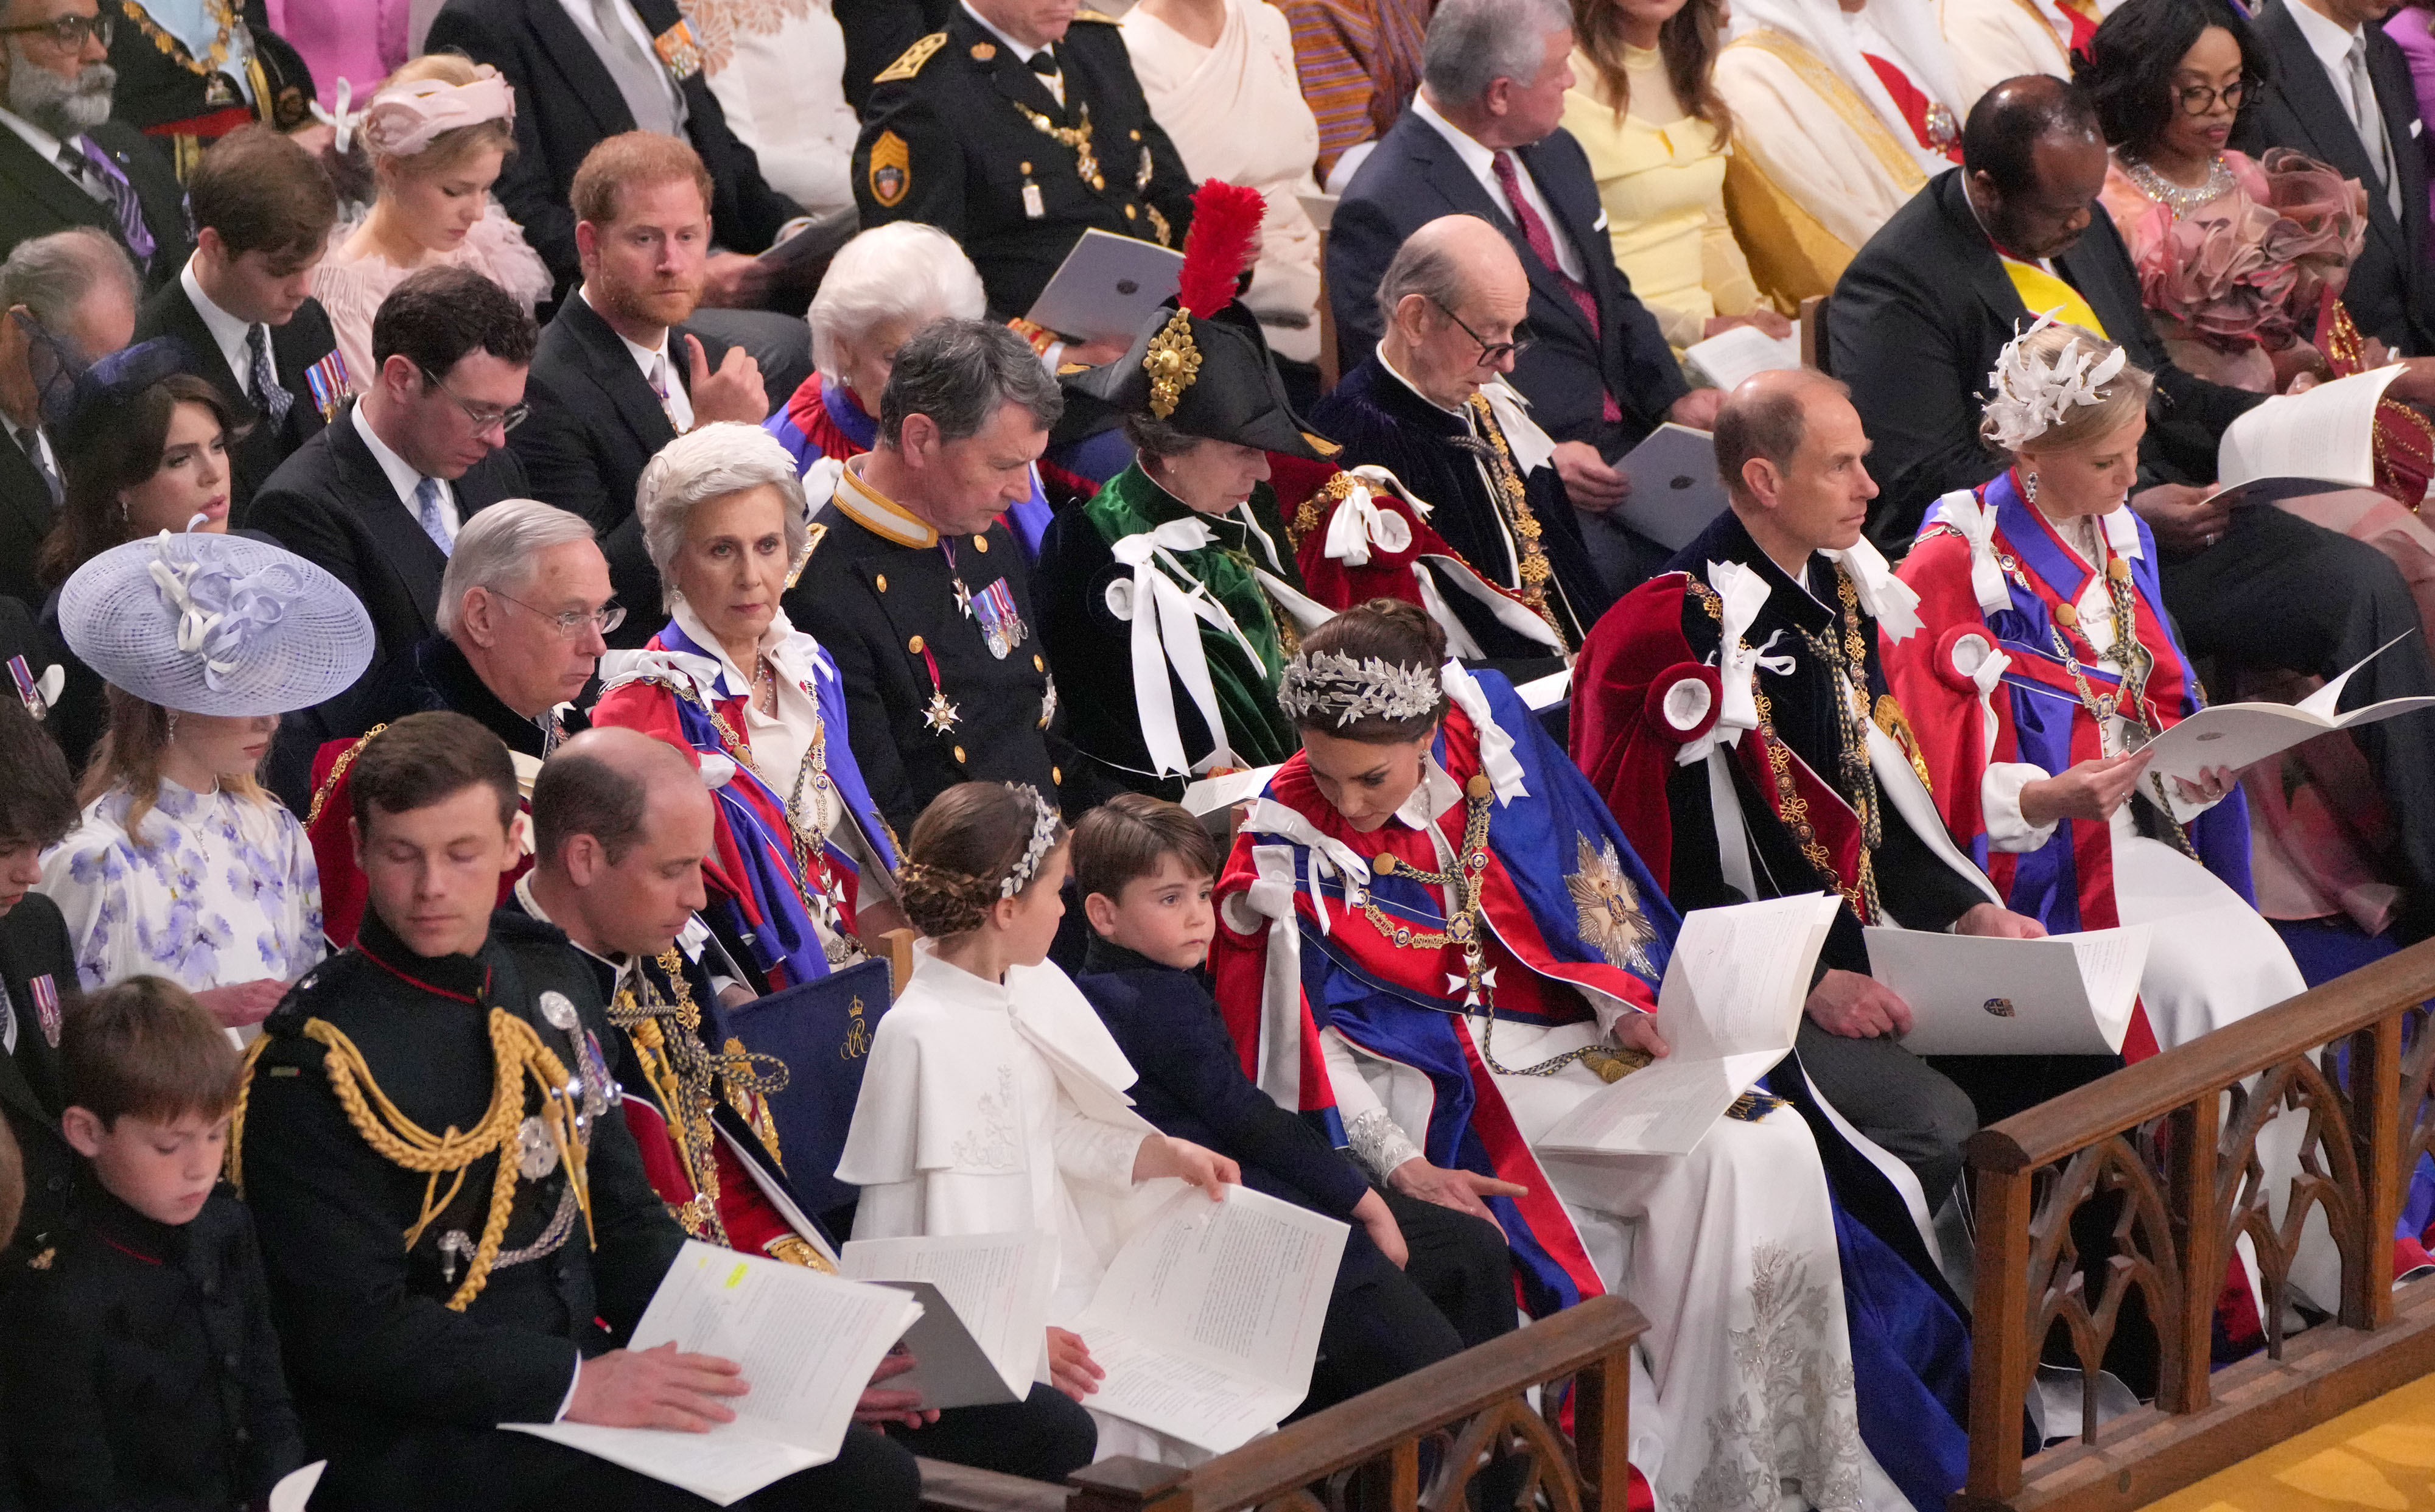 El príncipe Harry es visto sentado en la tercera fila en la ceremonia de coronación del rey Charles III y la reina Camilla en la Abadía de Westminster, el 6 de mayo de 2023 en Londres, Inglaterra. | Foto: Getty Images